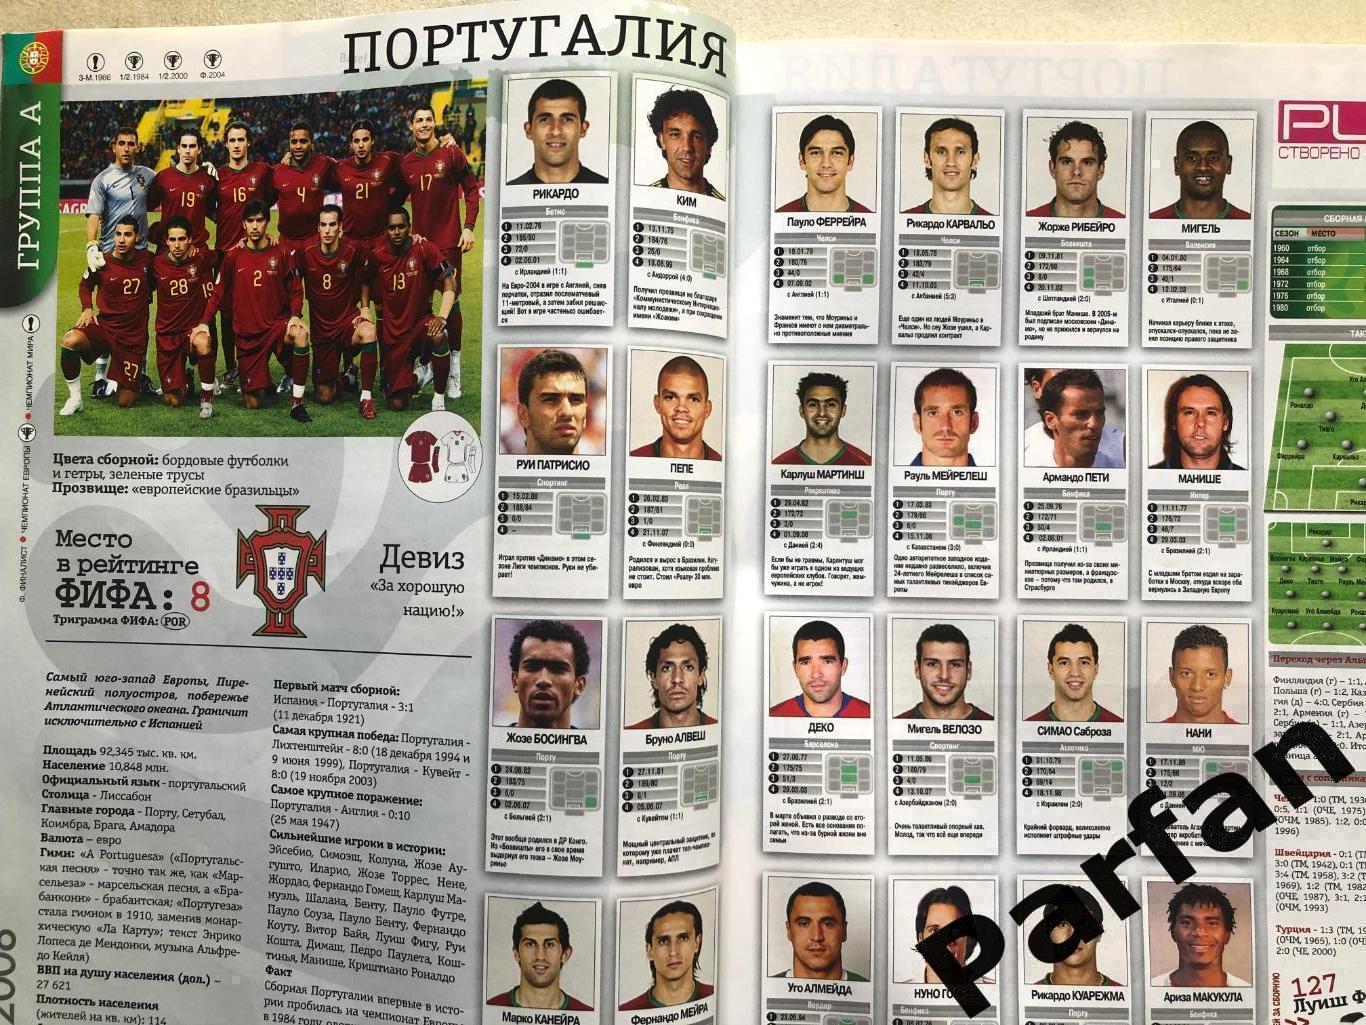 Журнал Футбол Україна Чемпіонат Європи 2008 Спецвипуск 1